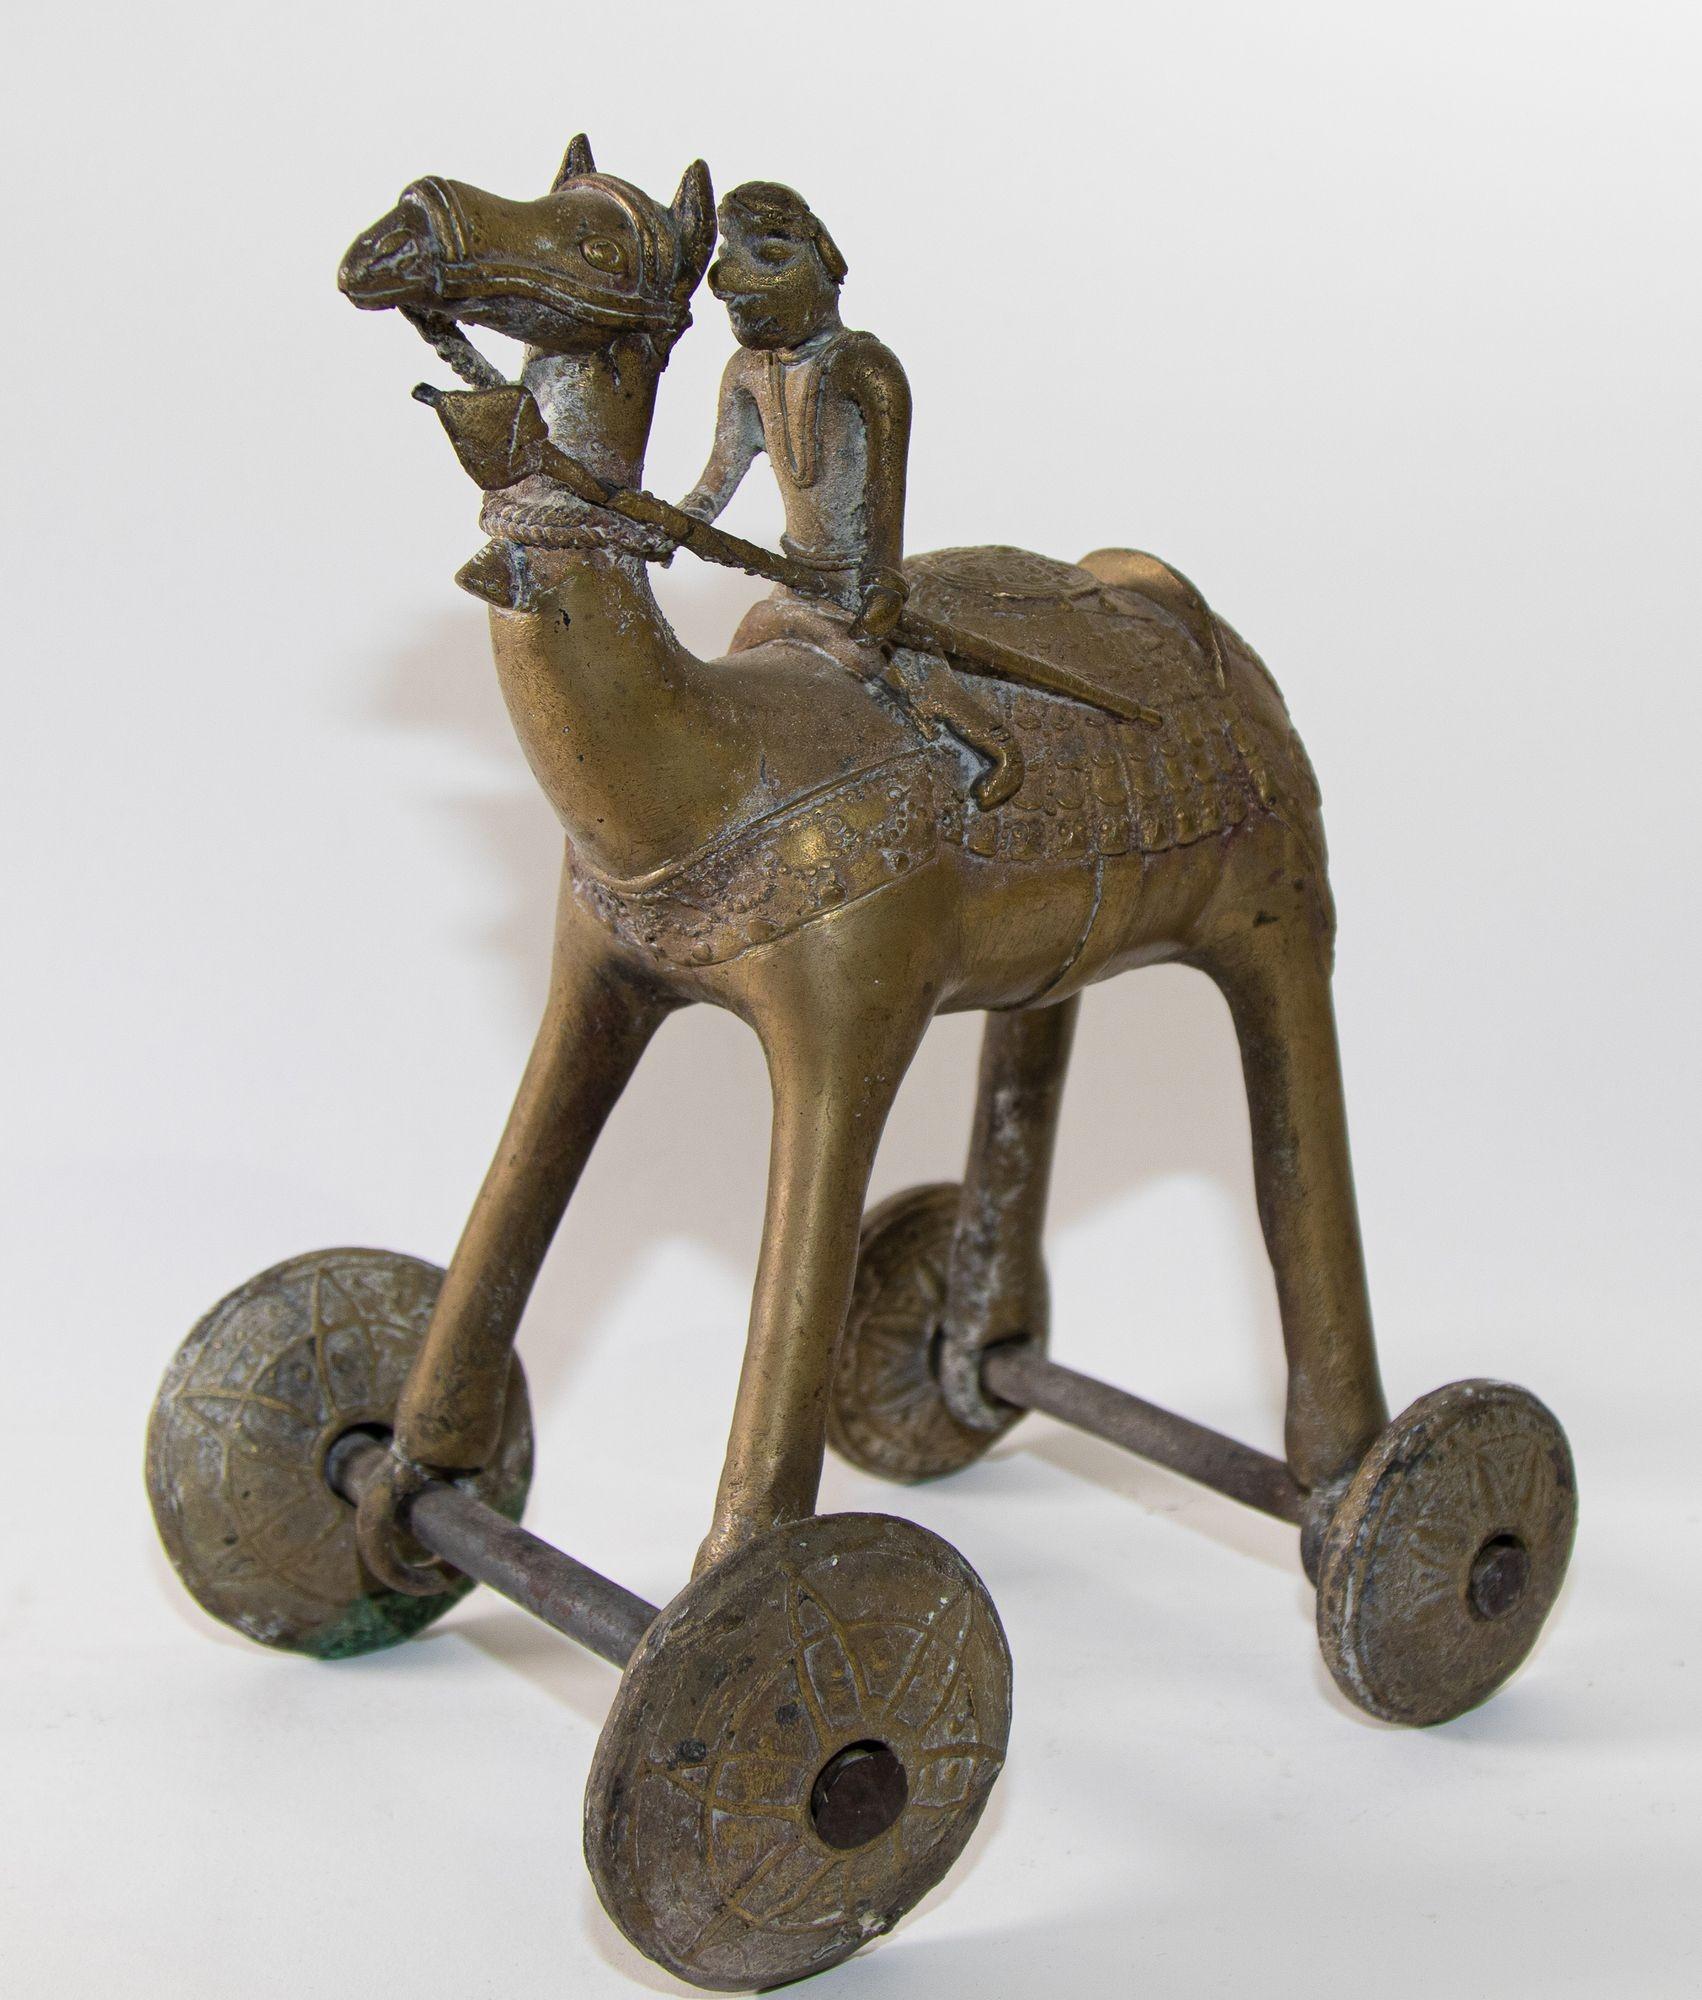 Une scène du Ramakian ou Ramayan, l'épopée indienne de Rama et Sita.
Grand et lourd chameau en métal, jouet de temple indien ancien, chameau en bronze sur roues.
Chameau avec cavalier sur roues, belle sculpture métallique pour enfants.
Jouet de